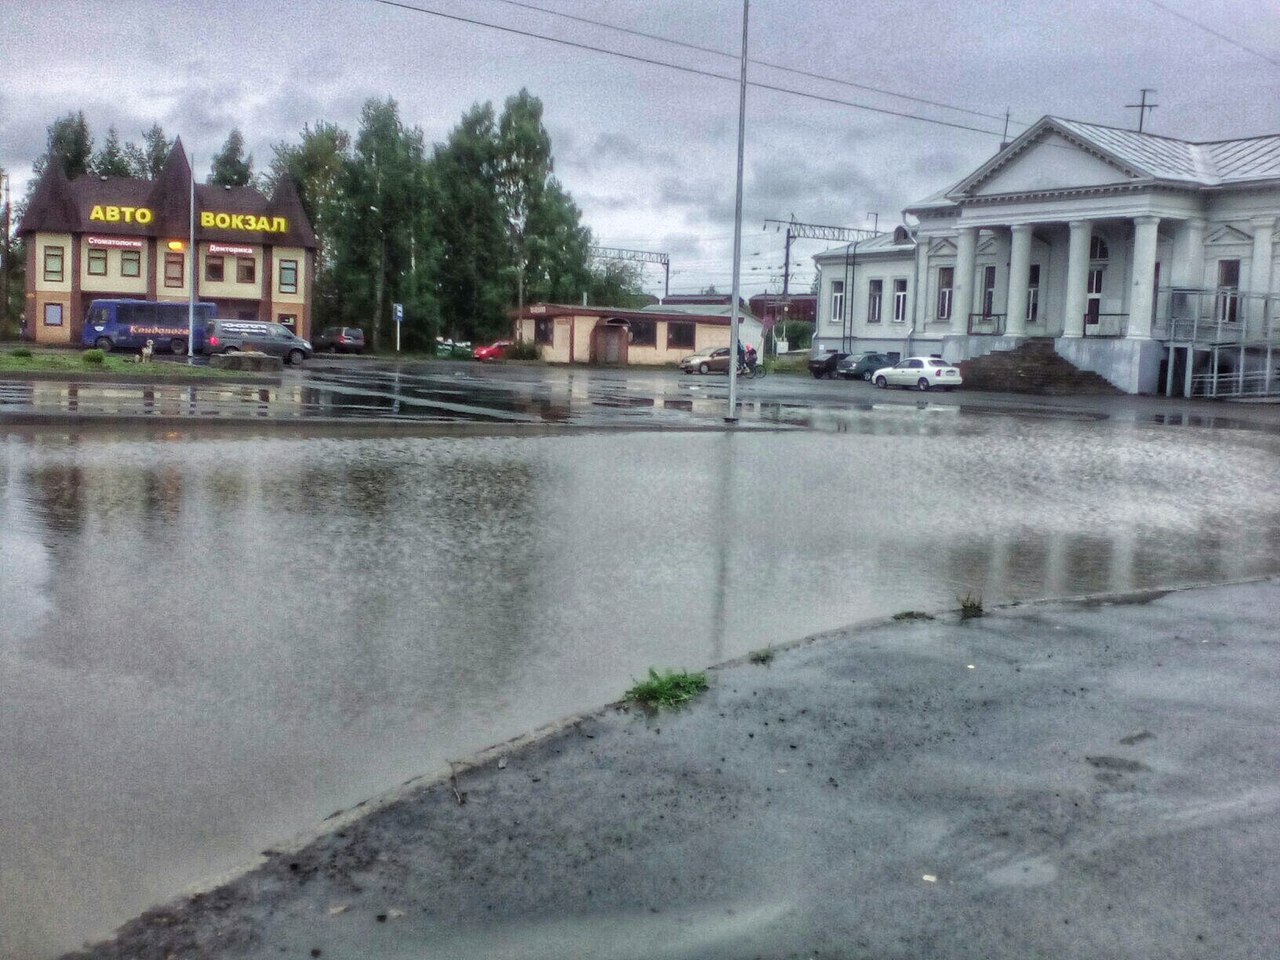 Привокзальная площадь Кондопоги после дождя. Фото: Юлия Шевчук